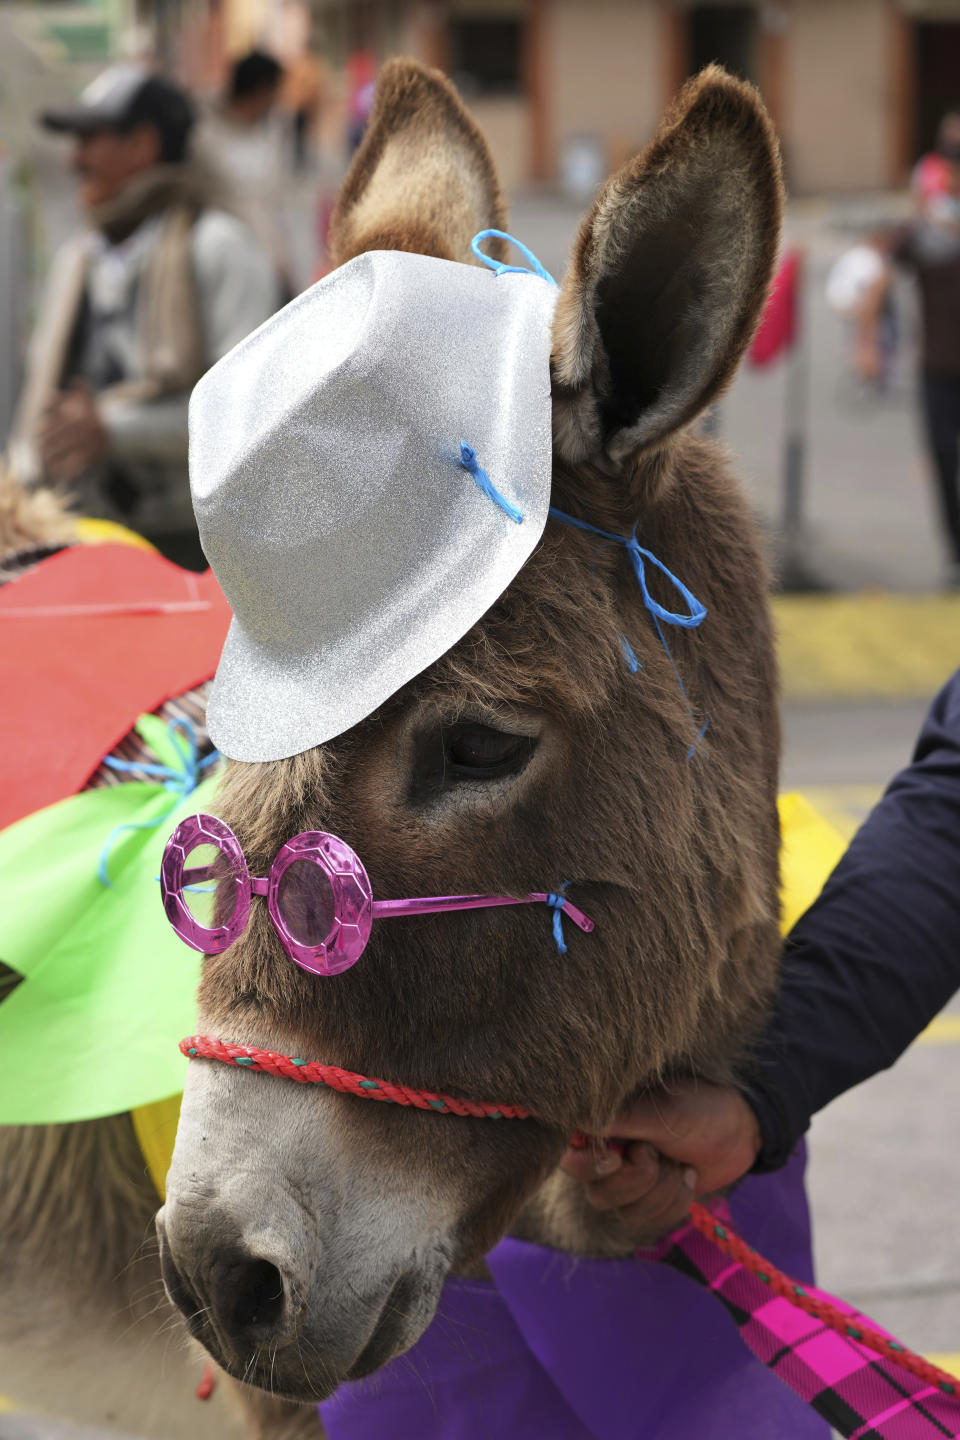 Un burro vestido de forma casual aguarda el comienzo de un desfile de asnos disfrazados durante un festival anual de esos equinos en Salcedo, Ecuador, que al final incluye una carrera, el sábado 10 de septiembre de 2022. (AP Foto/Dolores Ochoa)